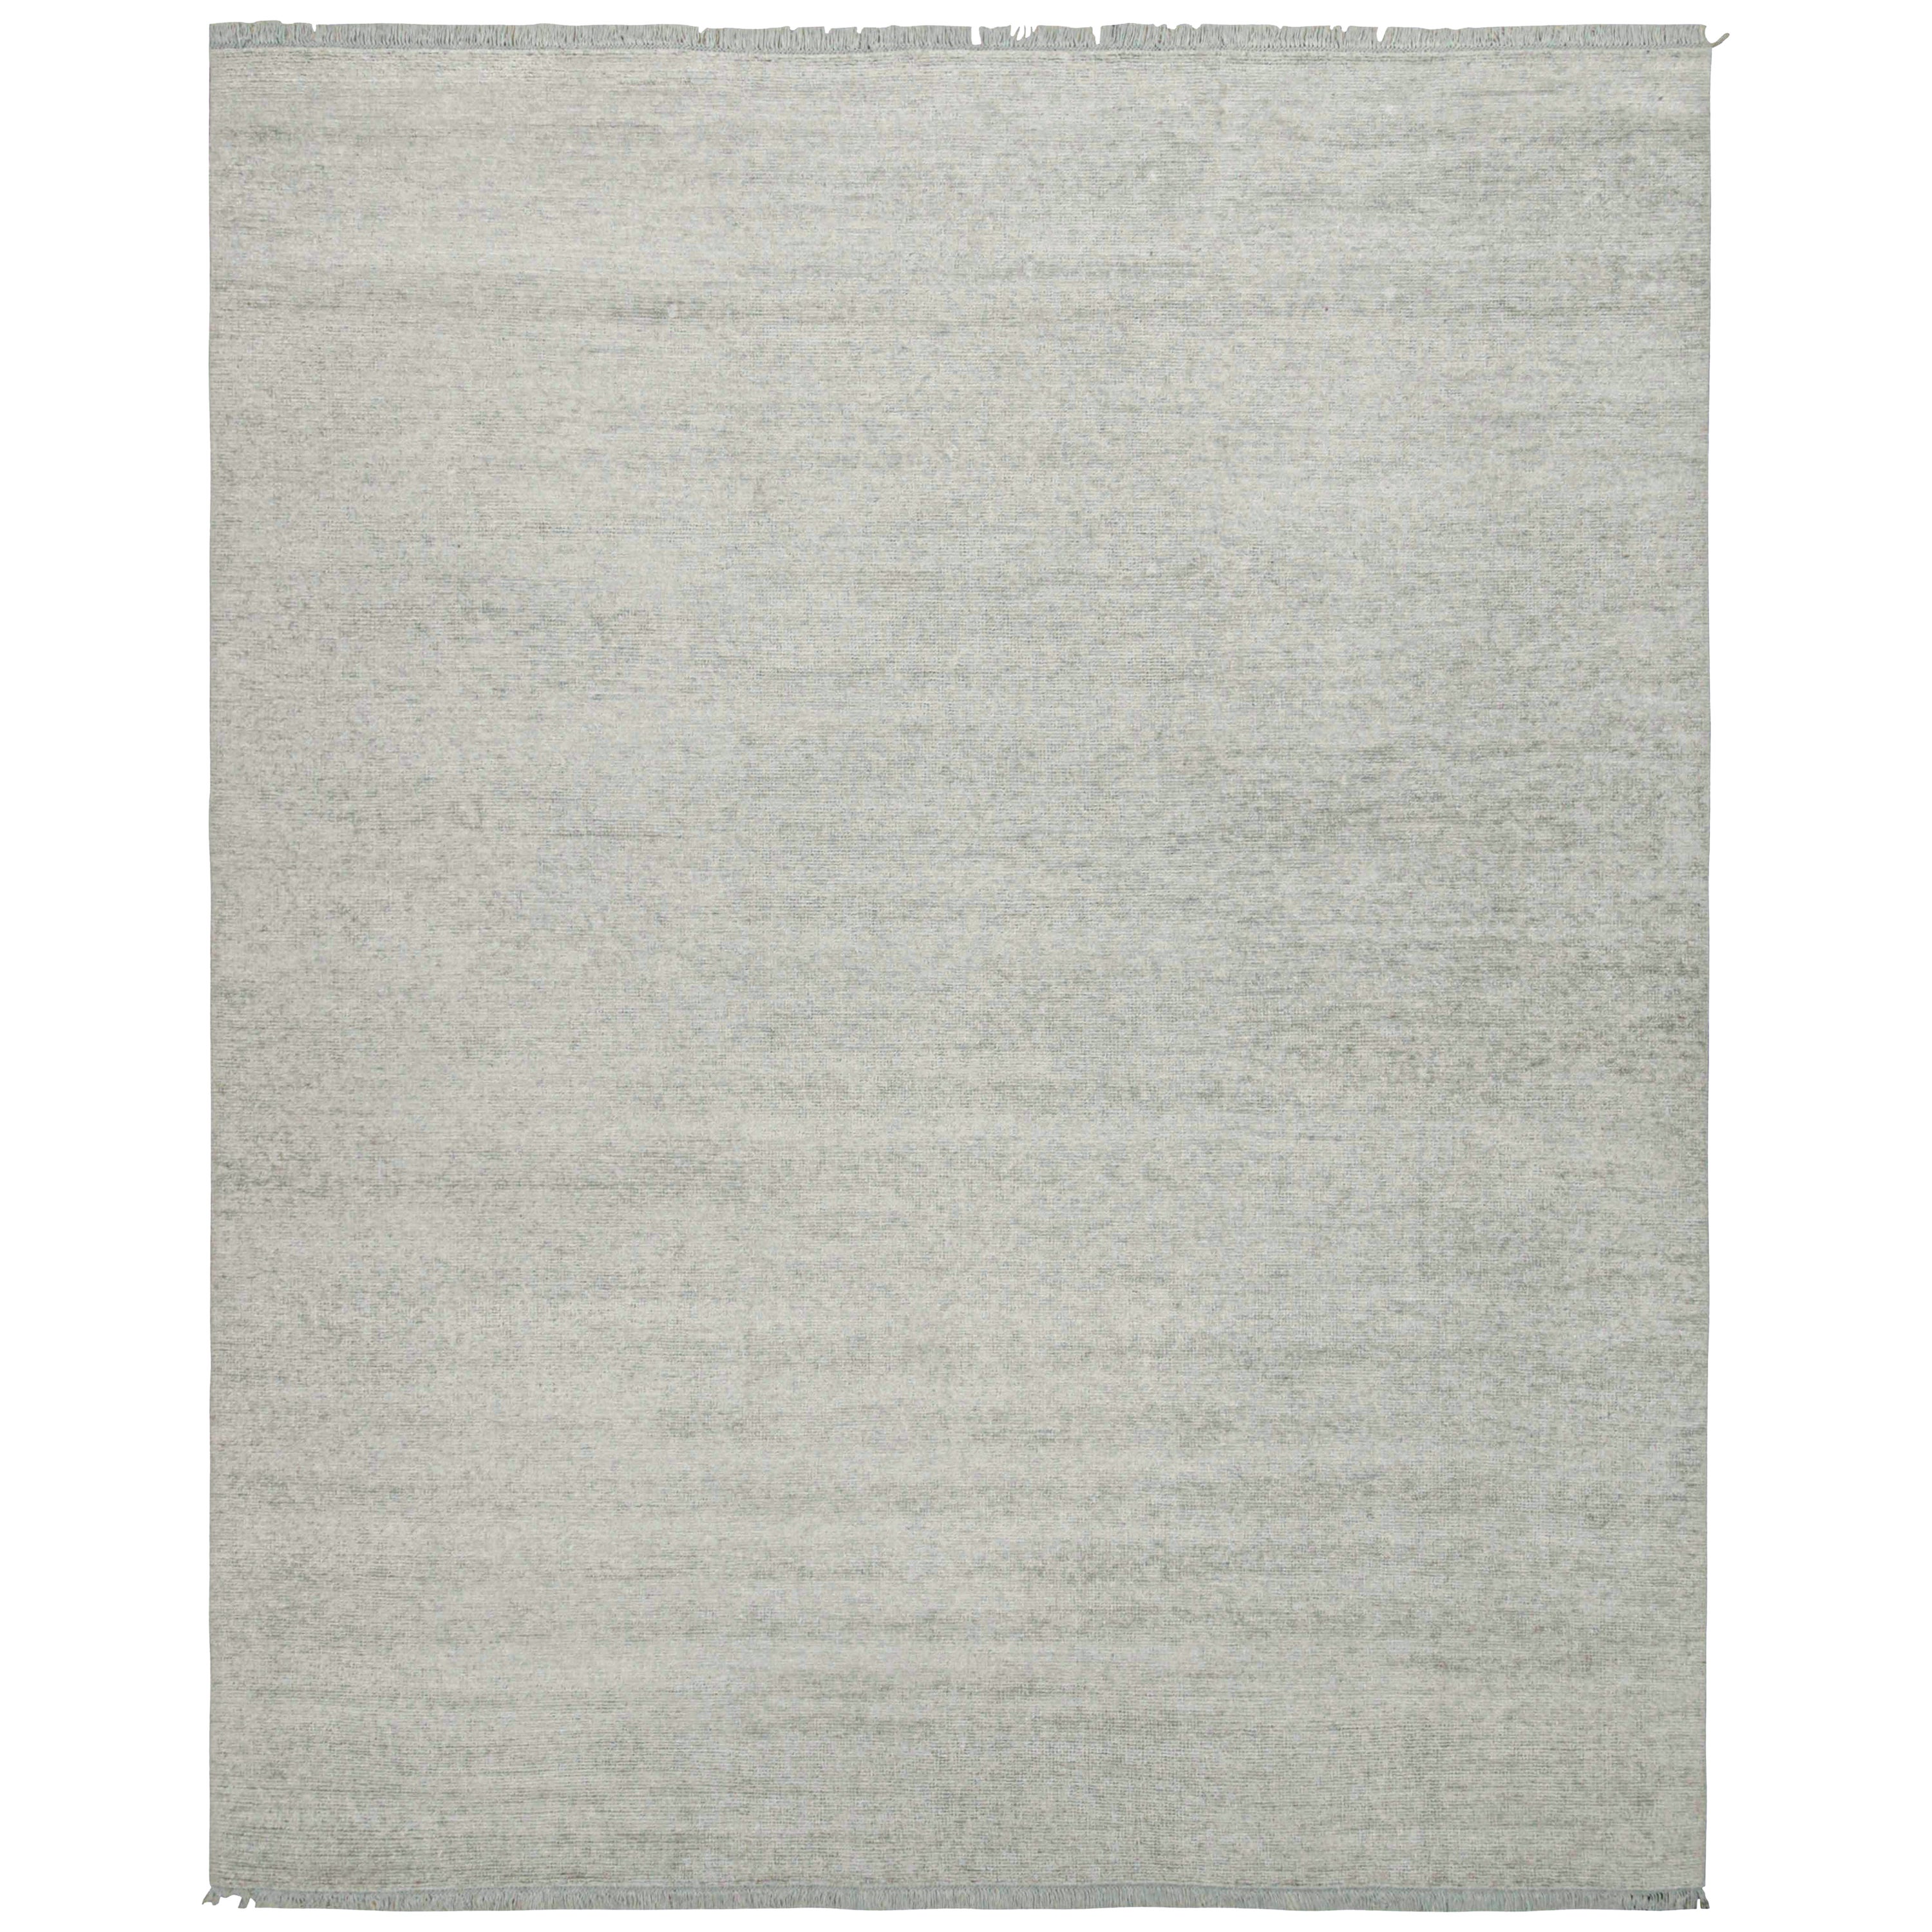 Dieser Teppich im Format 12x15 ist ein großartiger Neuzugang in der Modern-Teppichkollektion von Rug & Kilim.

Kenner werden bemerken, dass dieses Stück aus unserer neuen Light on Loom-Linie stammt, die schneller als je zuvor maßgeschneiderte